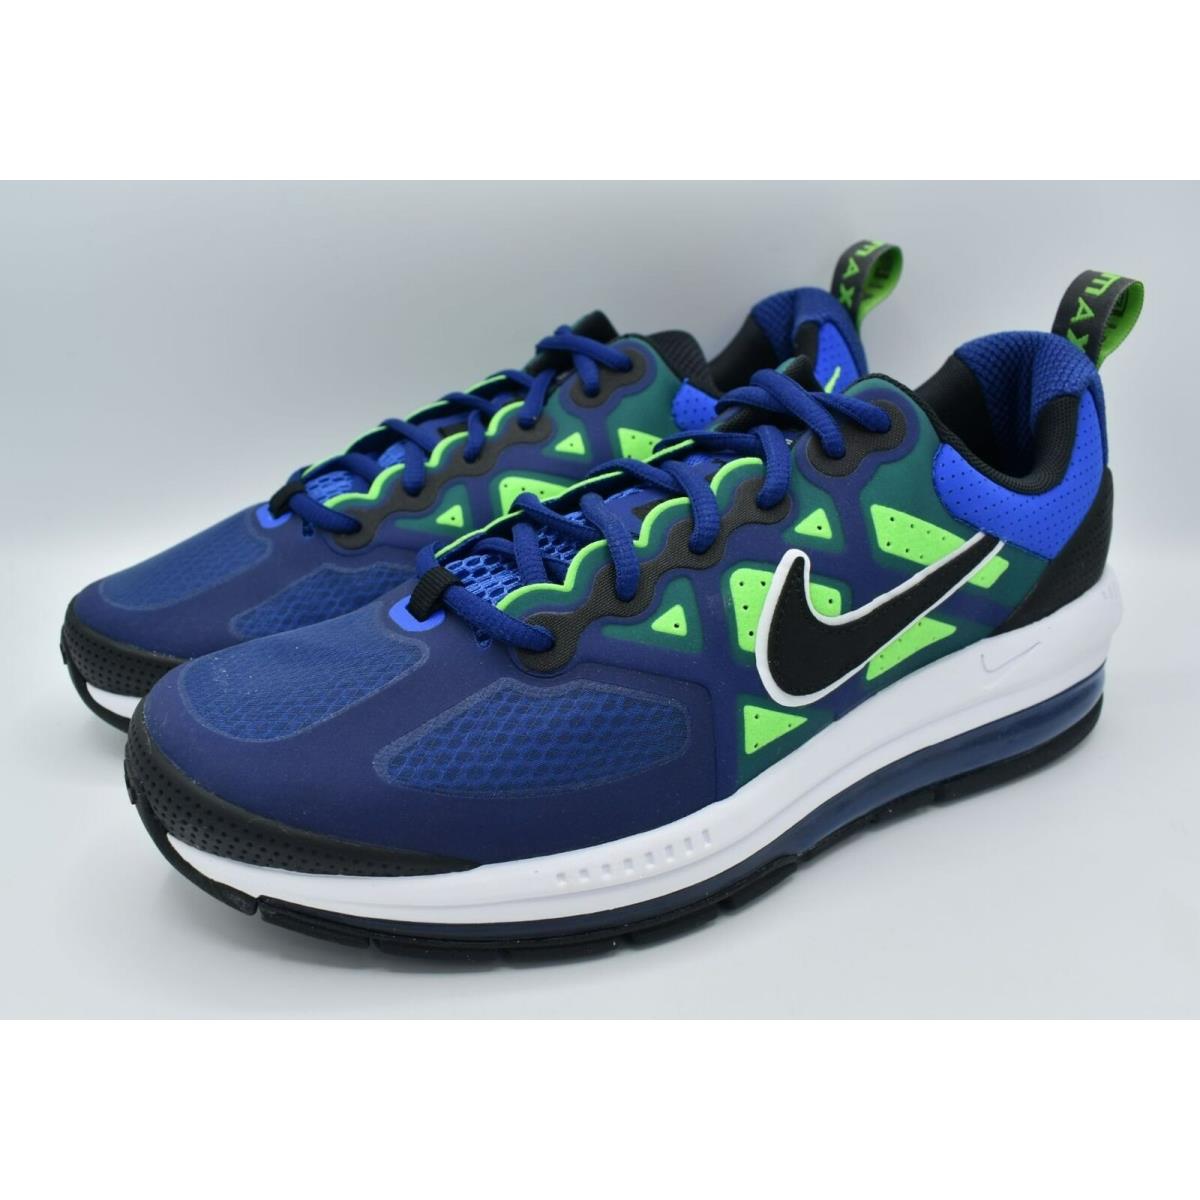 Nike shoes Air Max Genome - Deep Royal Blue / Black 4